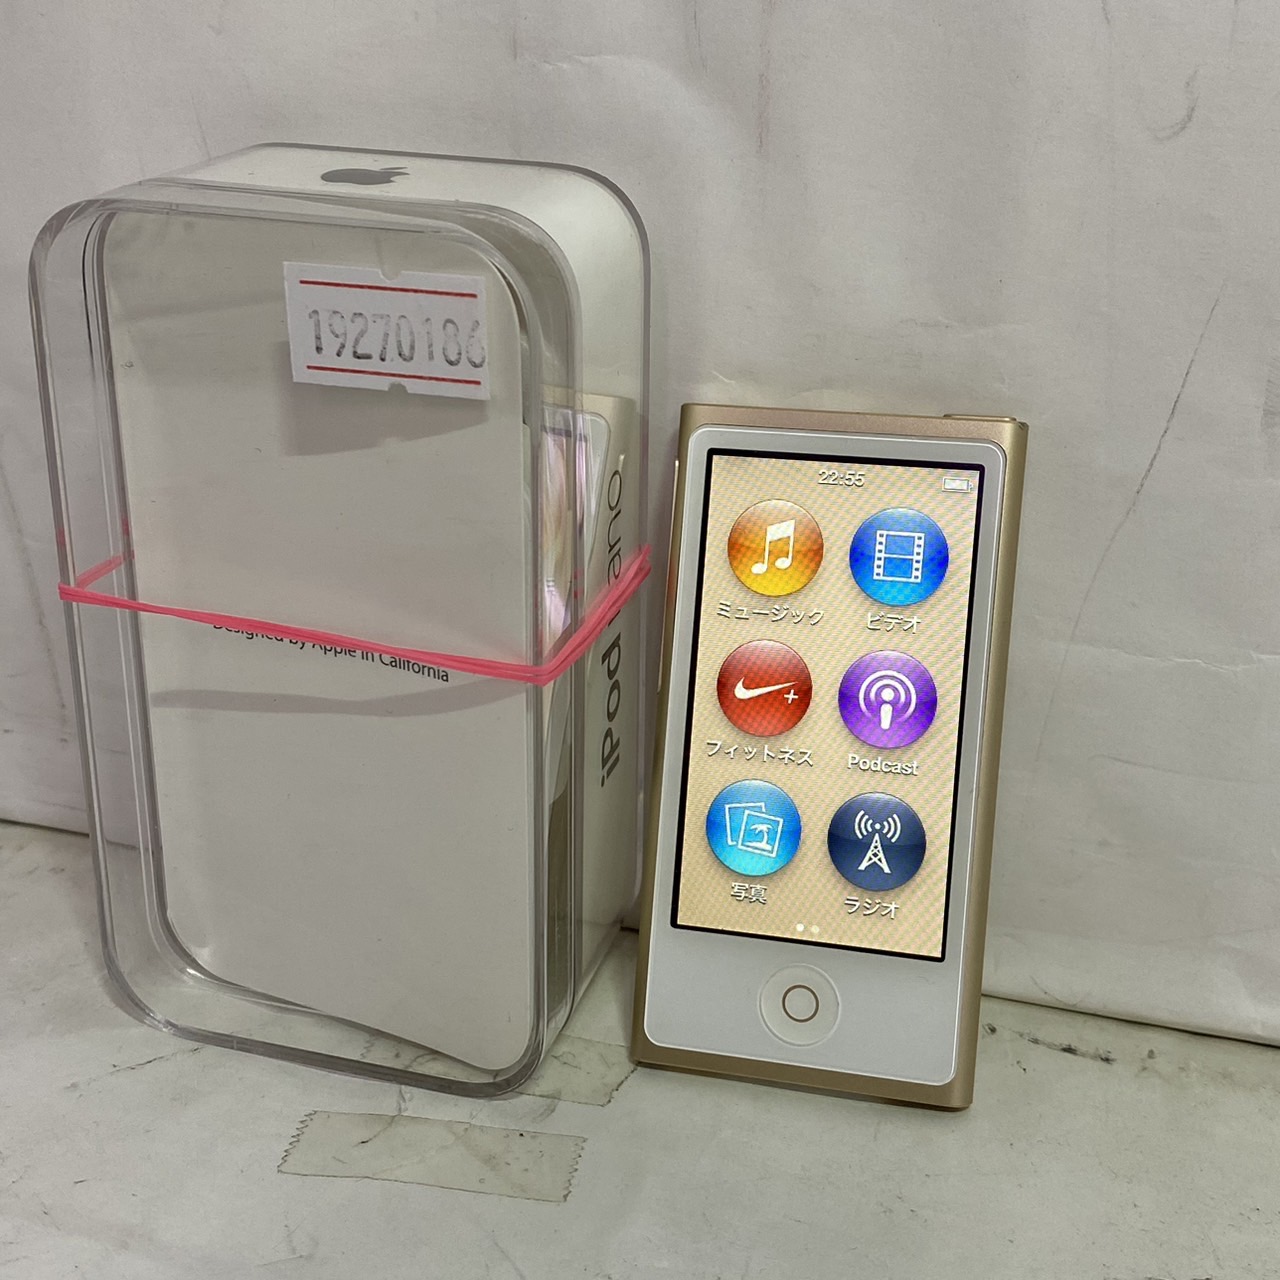 APPLE(アップル) iPod nano 第7世代 [16GB]の激安通販 - パソコン ...